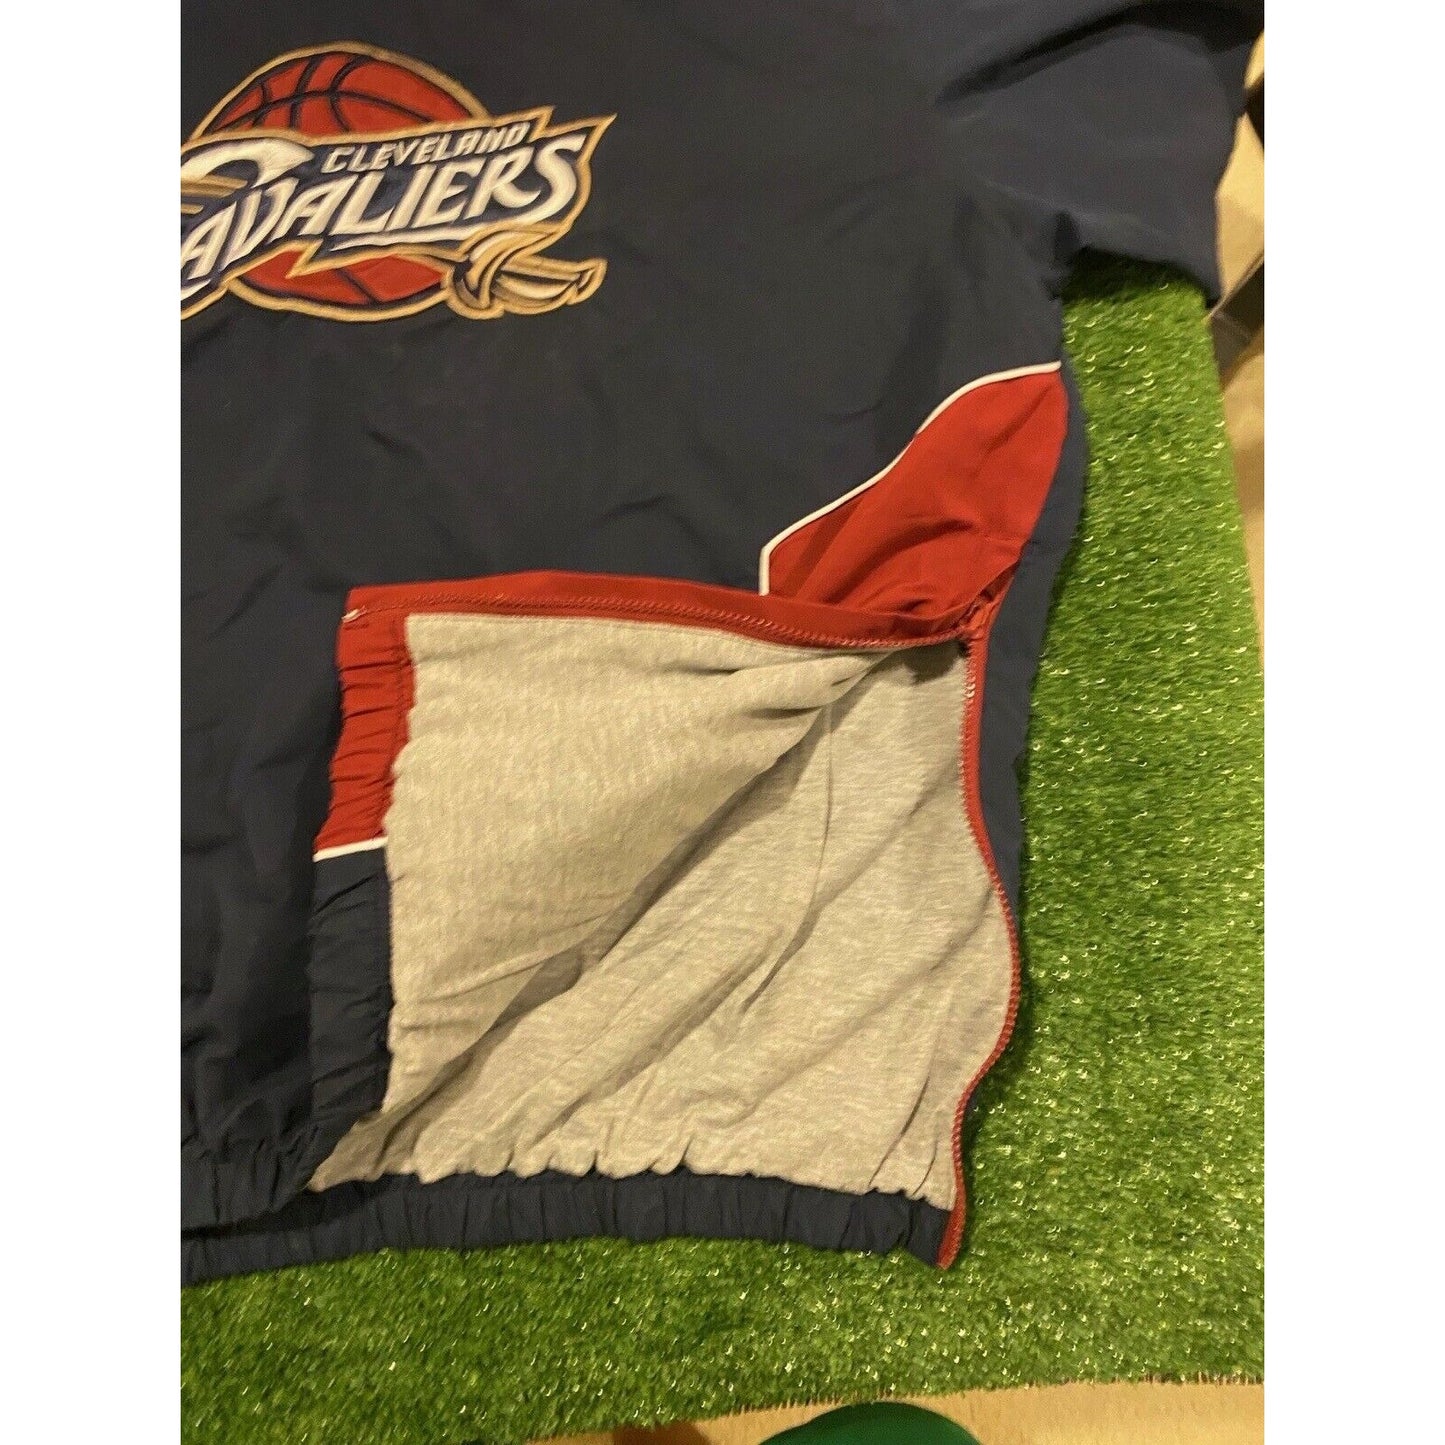 Retro Y2K NBA Team Cleveland Cavaliers Cavs logo pullover jacket coat 2XL